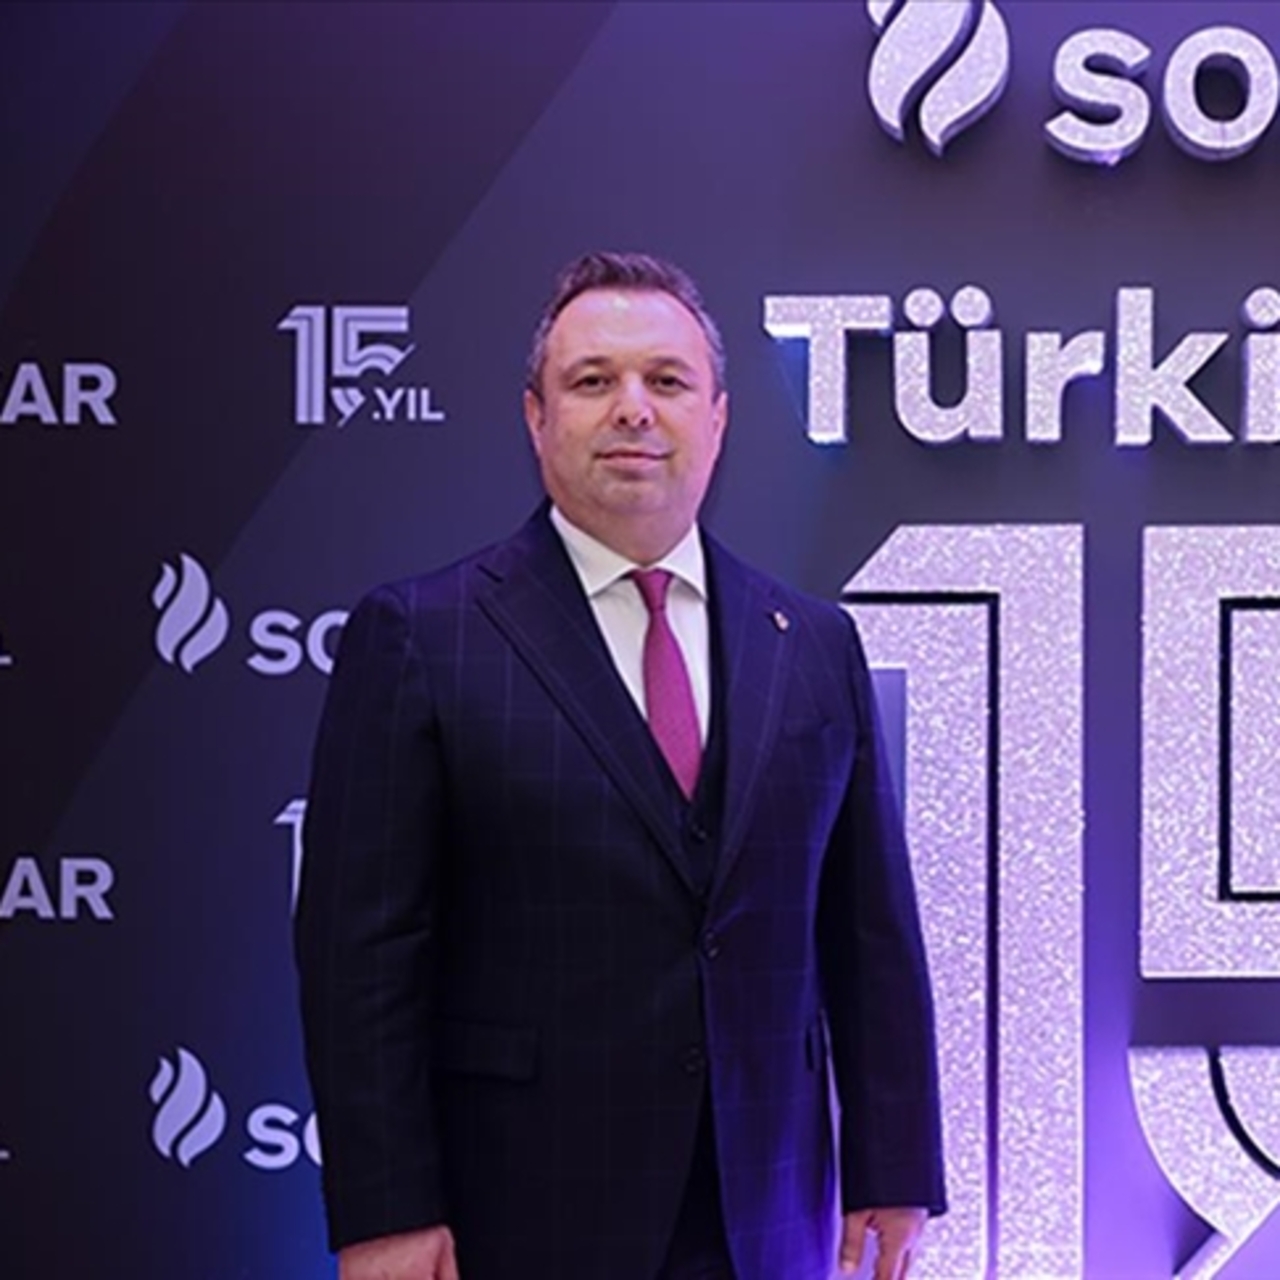 SOCAR Türkiye, 15. yılını kutladı